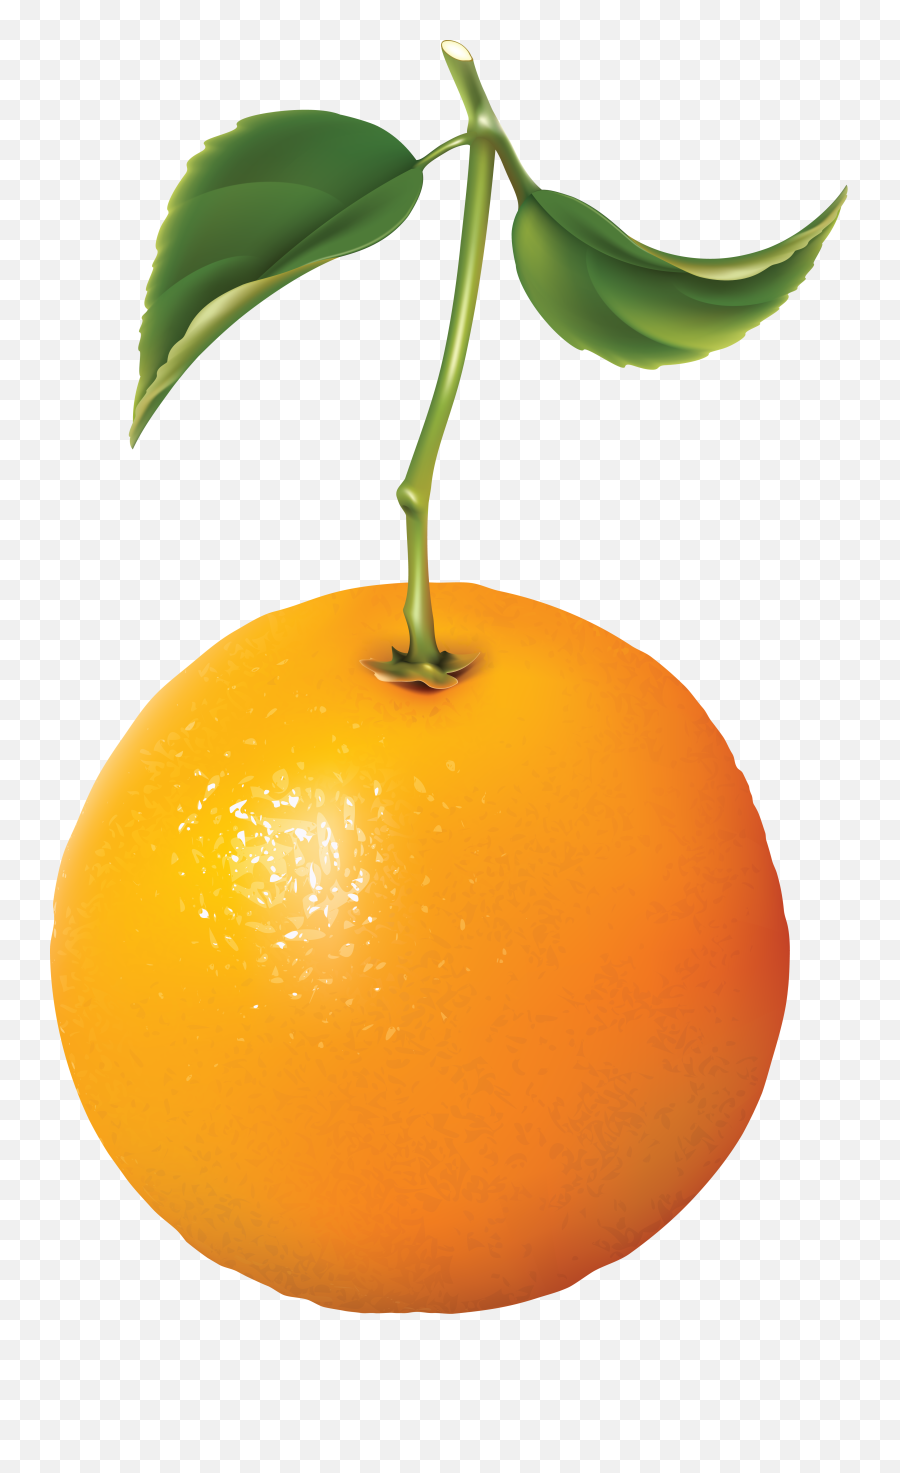 Orange Png Image For Free Download - Free Download Orange,Orange Png